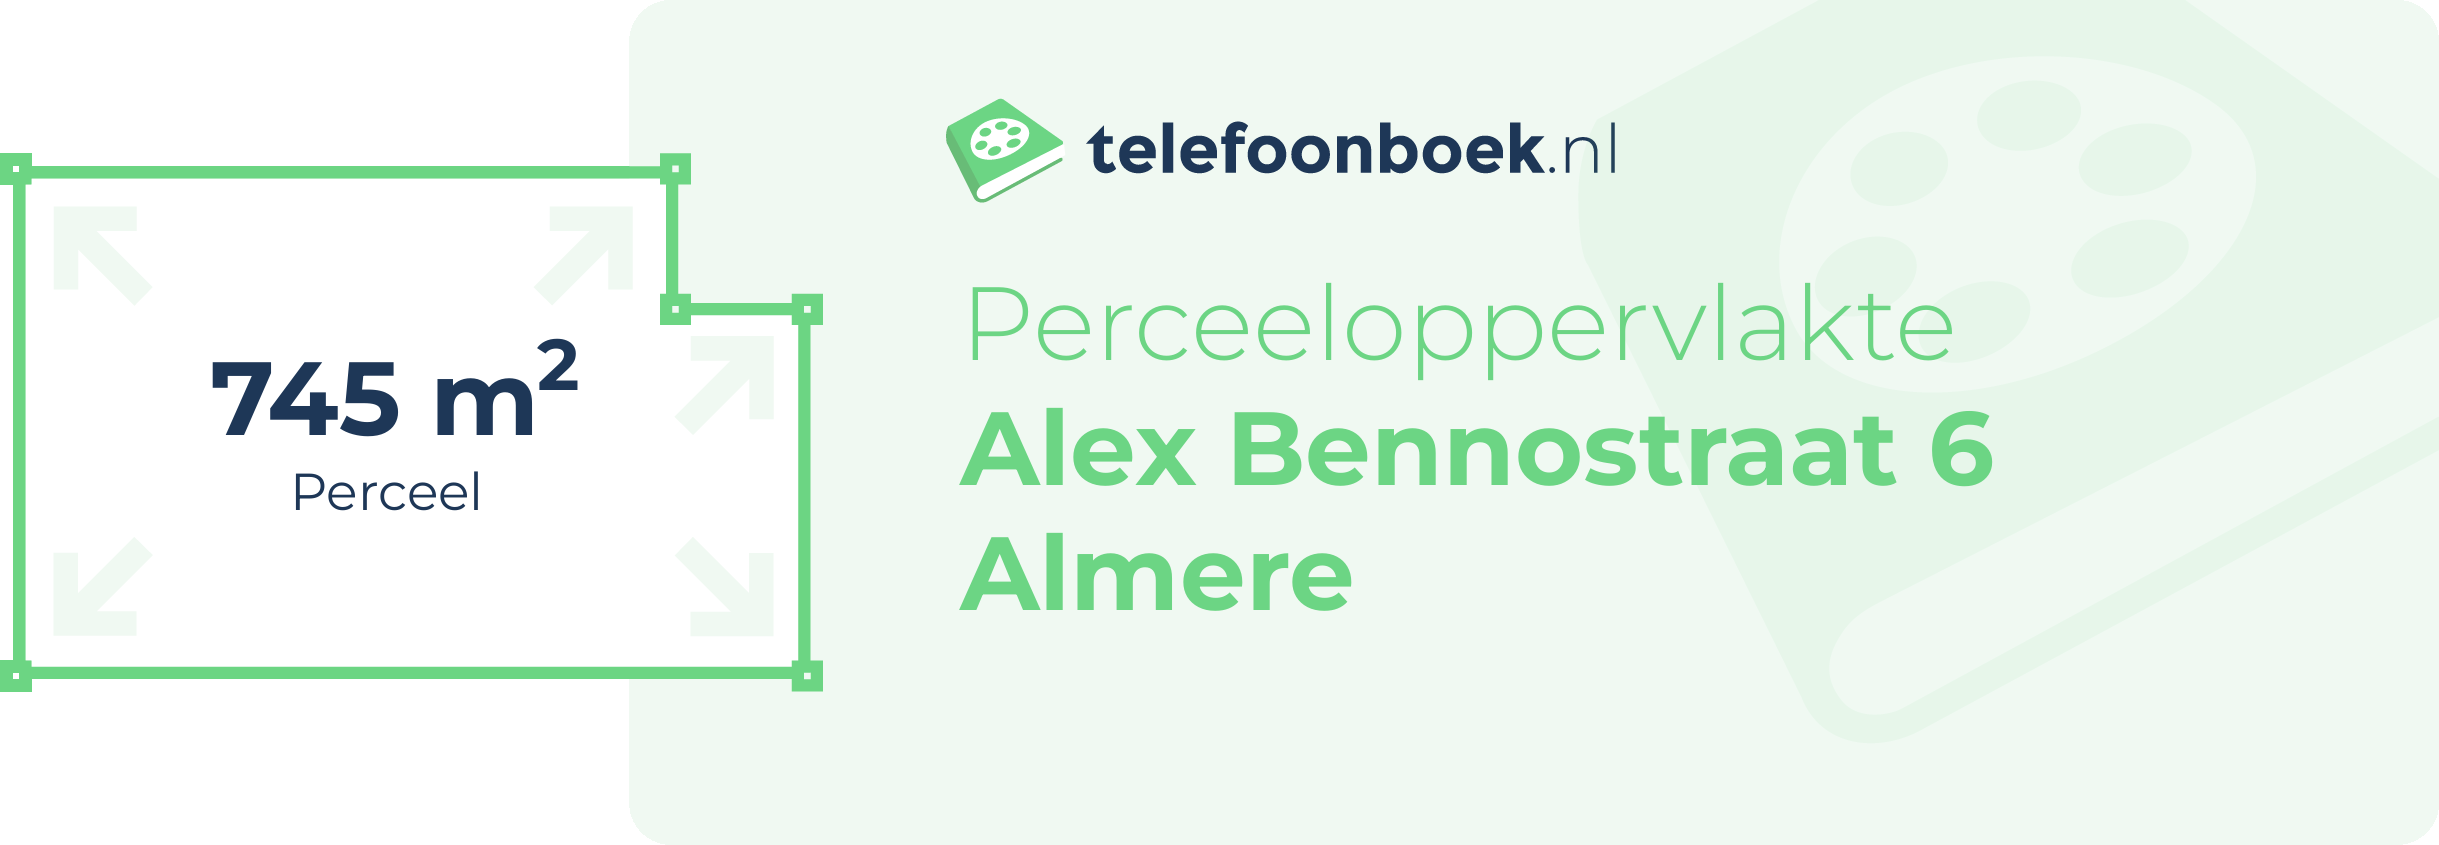 Perceeloppervlakte Alex Bennostraat 6 Almere